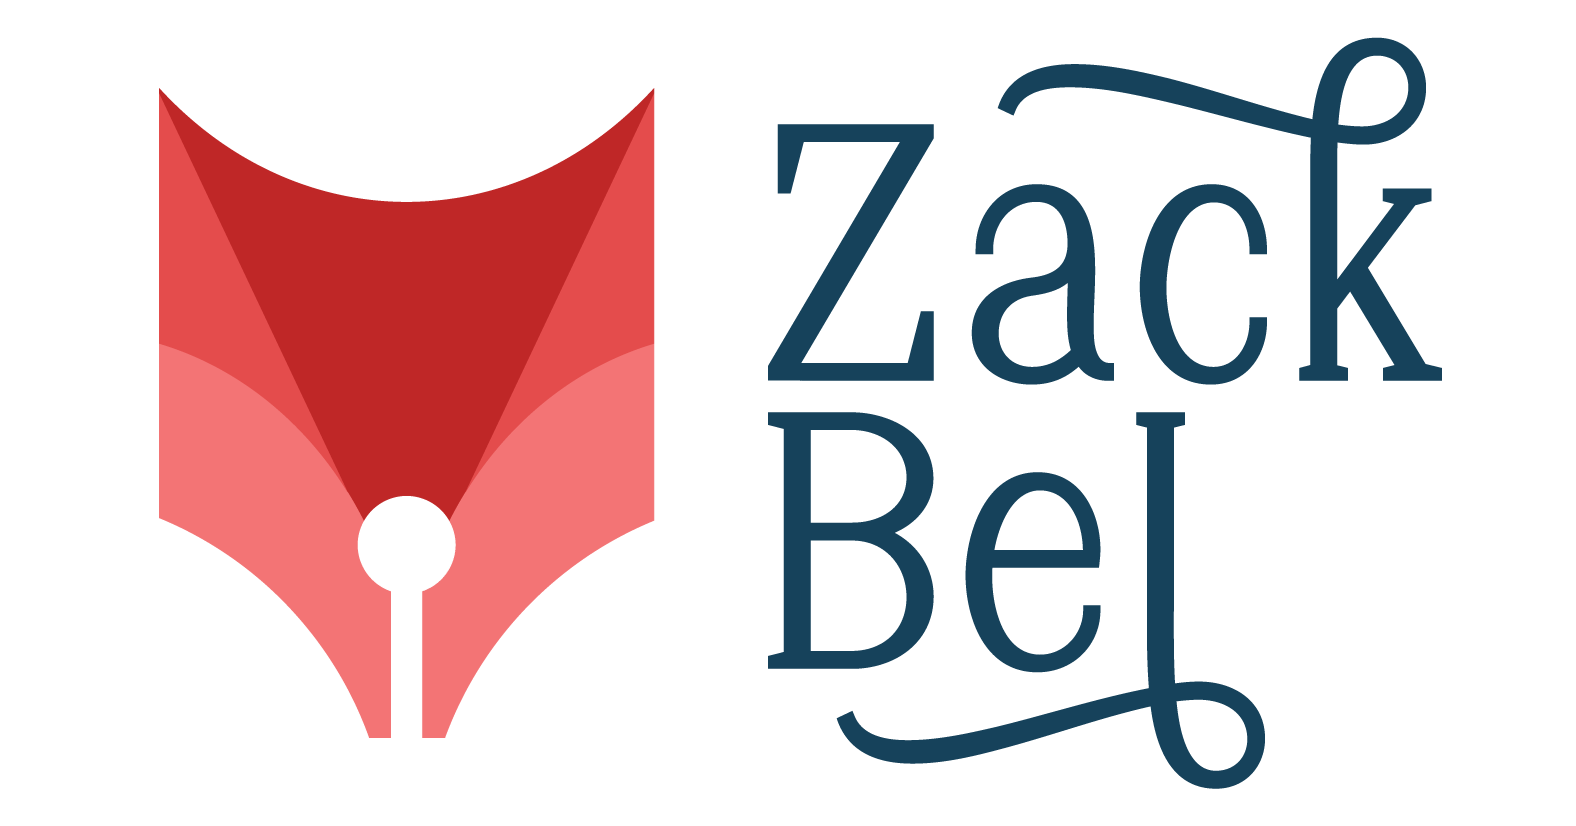 Zack Bel